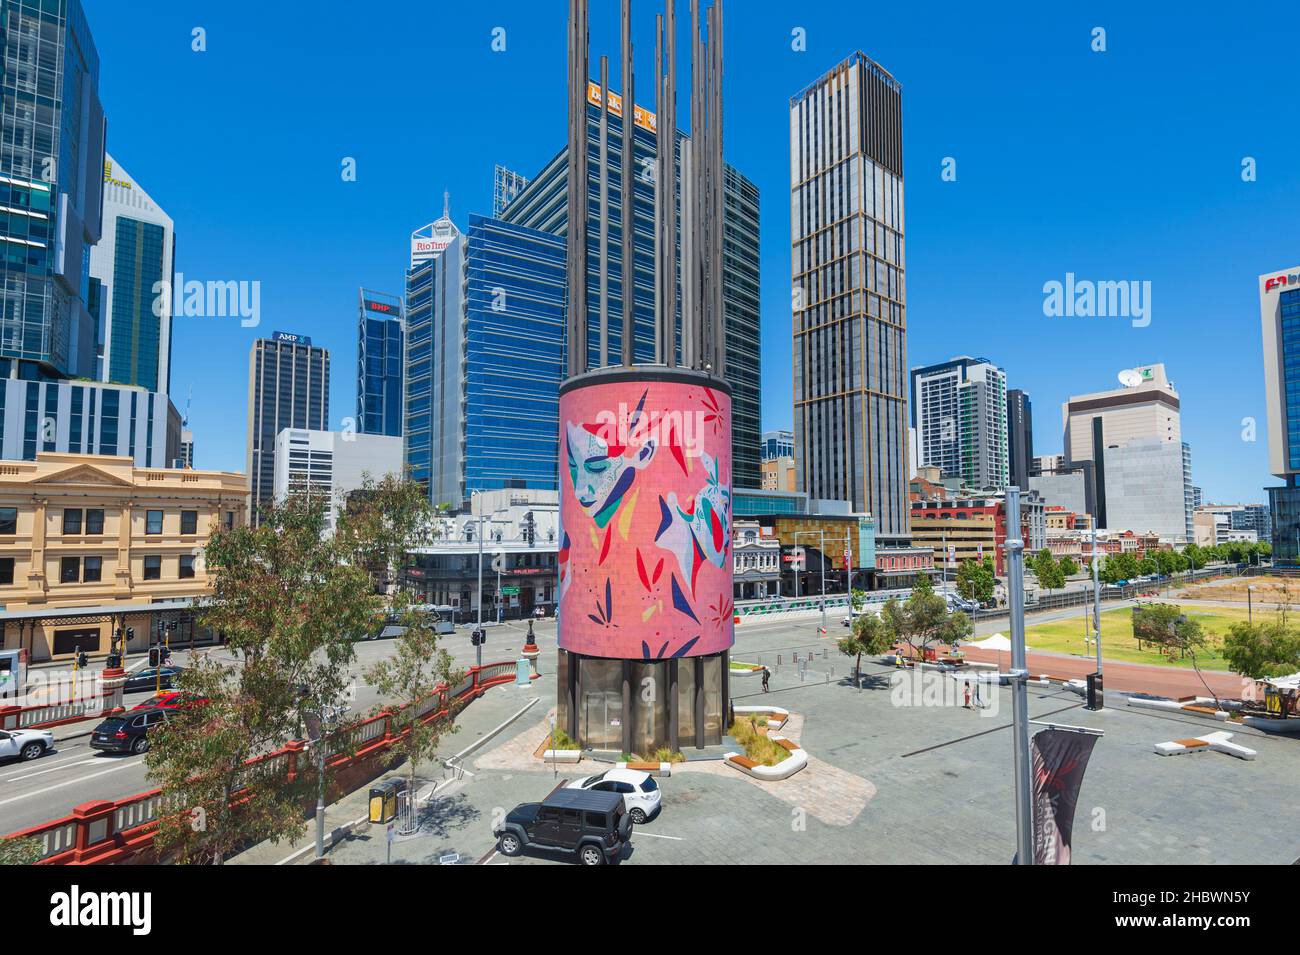 View of Yagan Square est une destination touristique populaire dans le quartier central des affaires de Perth, Australie occidentale, Australie occidentale, Australie Banque D'Images